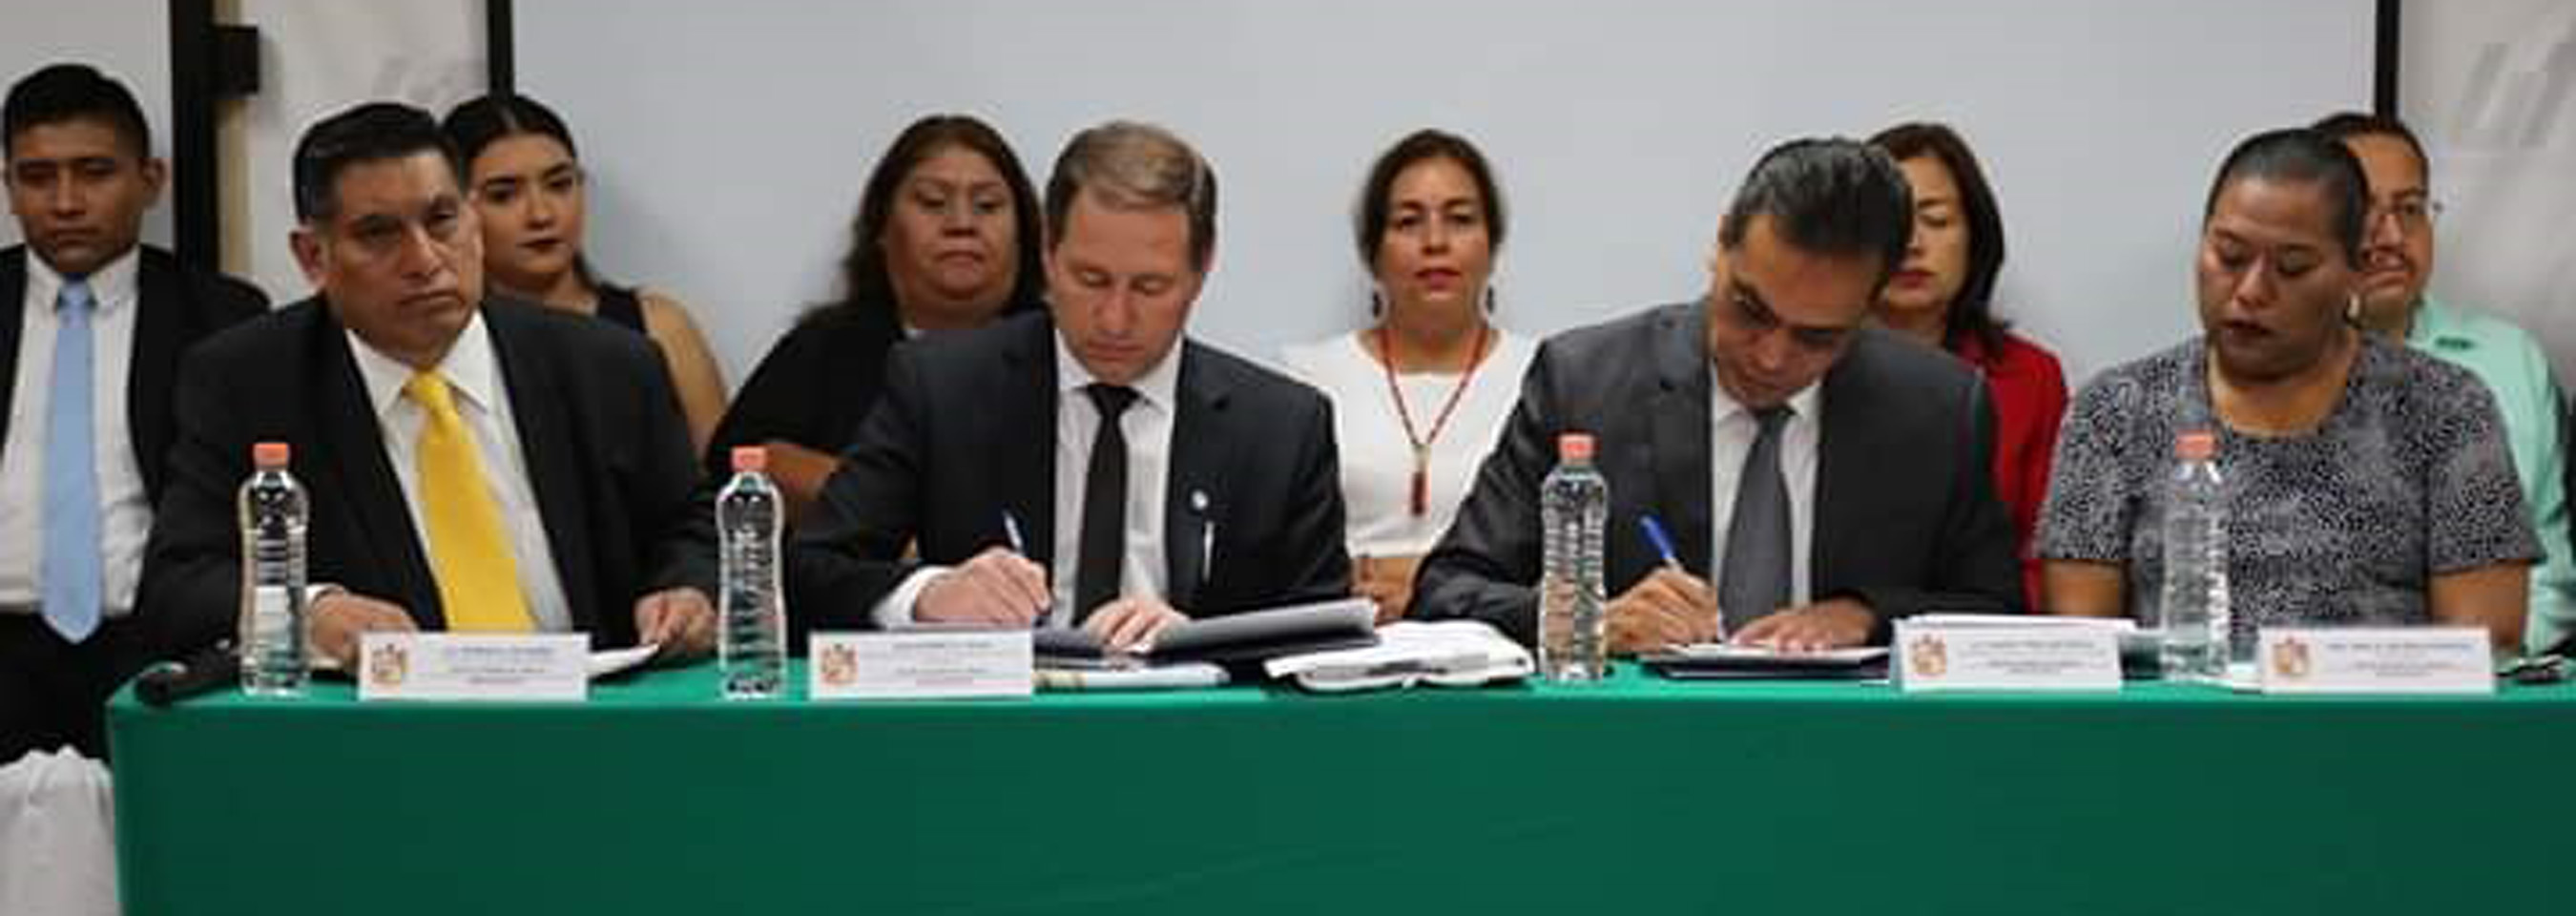 Convenio de hermanamiento con municipio mexicano